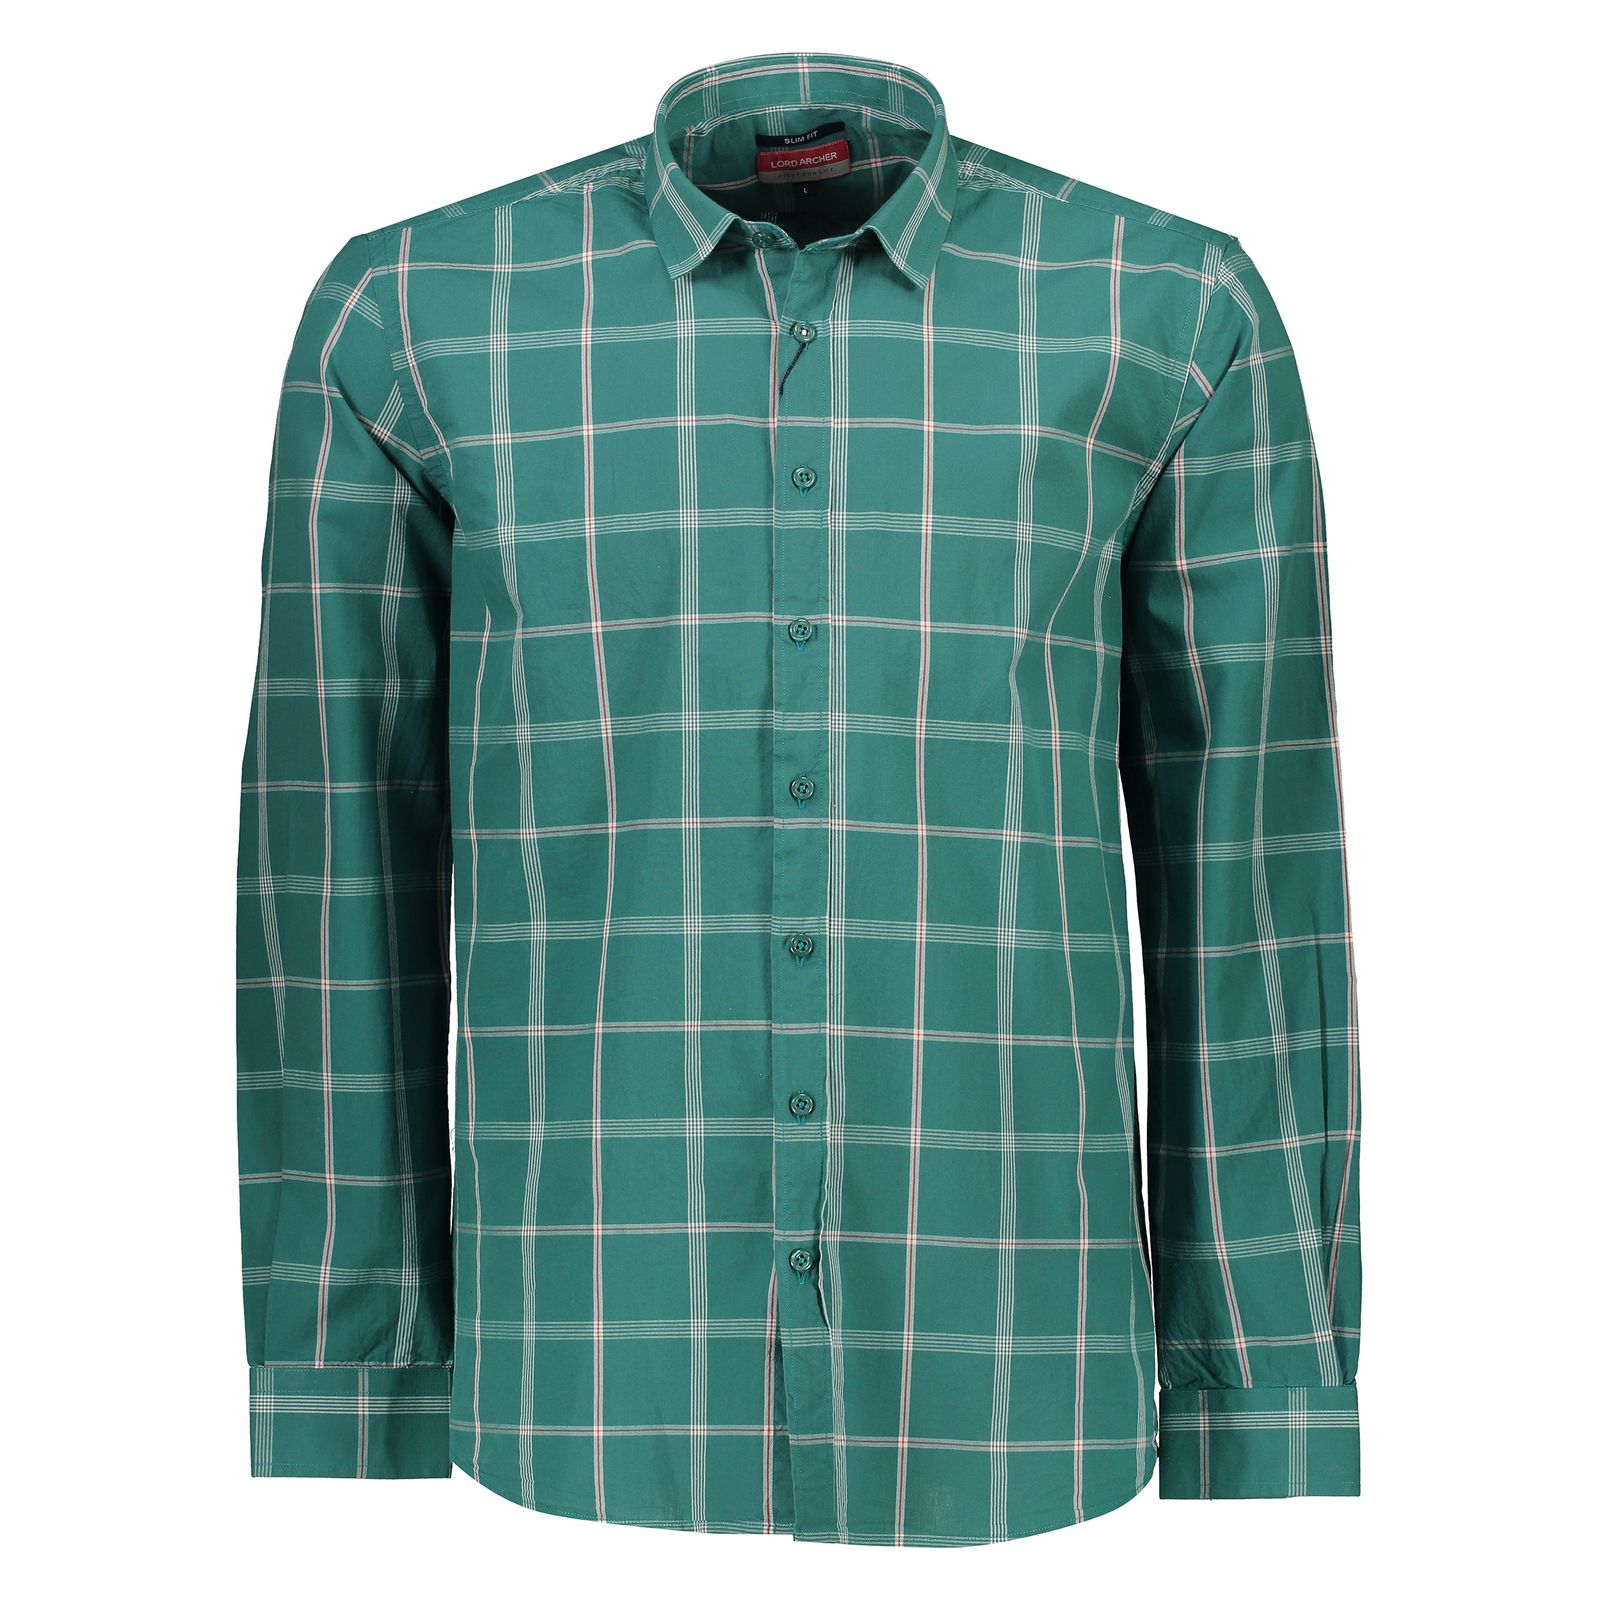 پیراهن مردانه لرد آرچر مدل 20011434501 - سبز سفید - 1